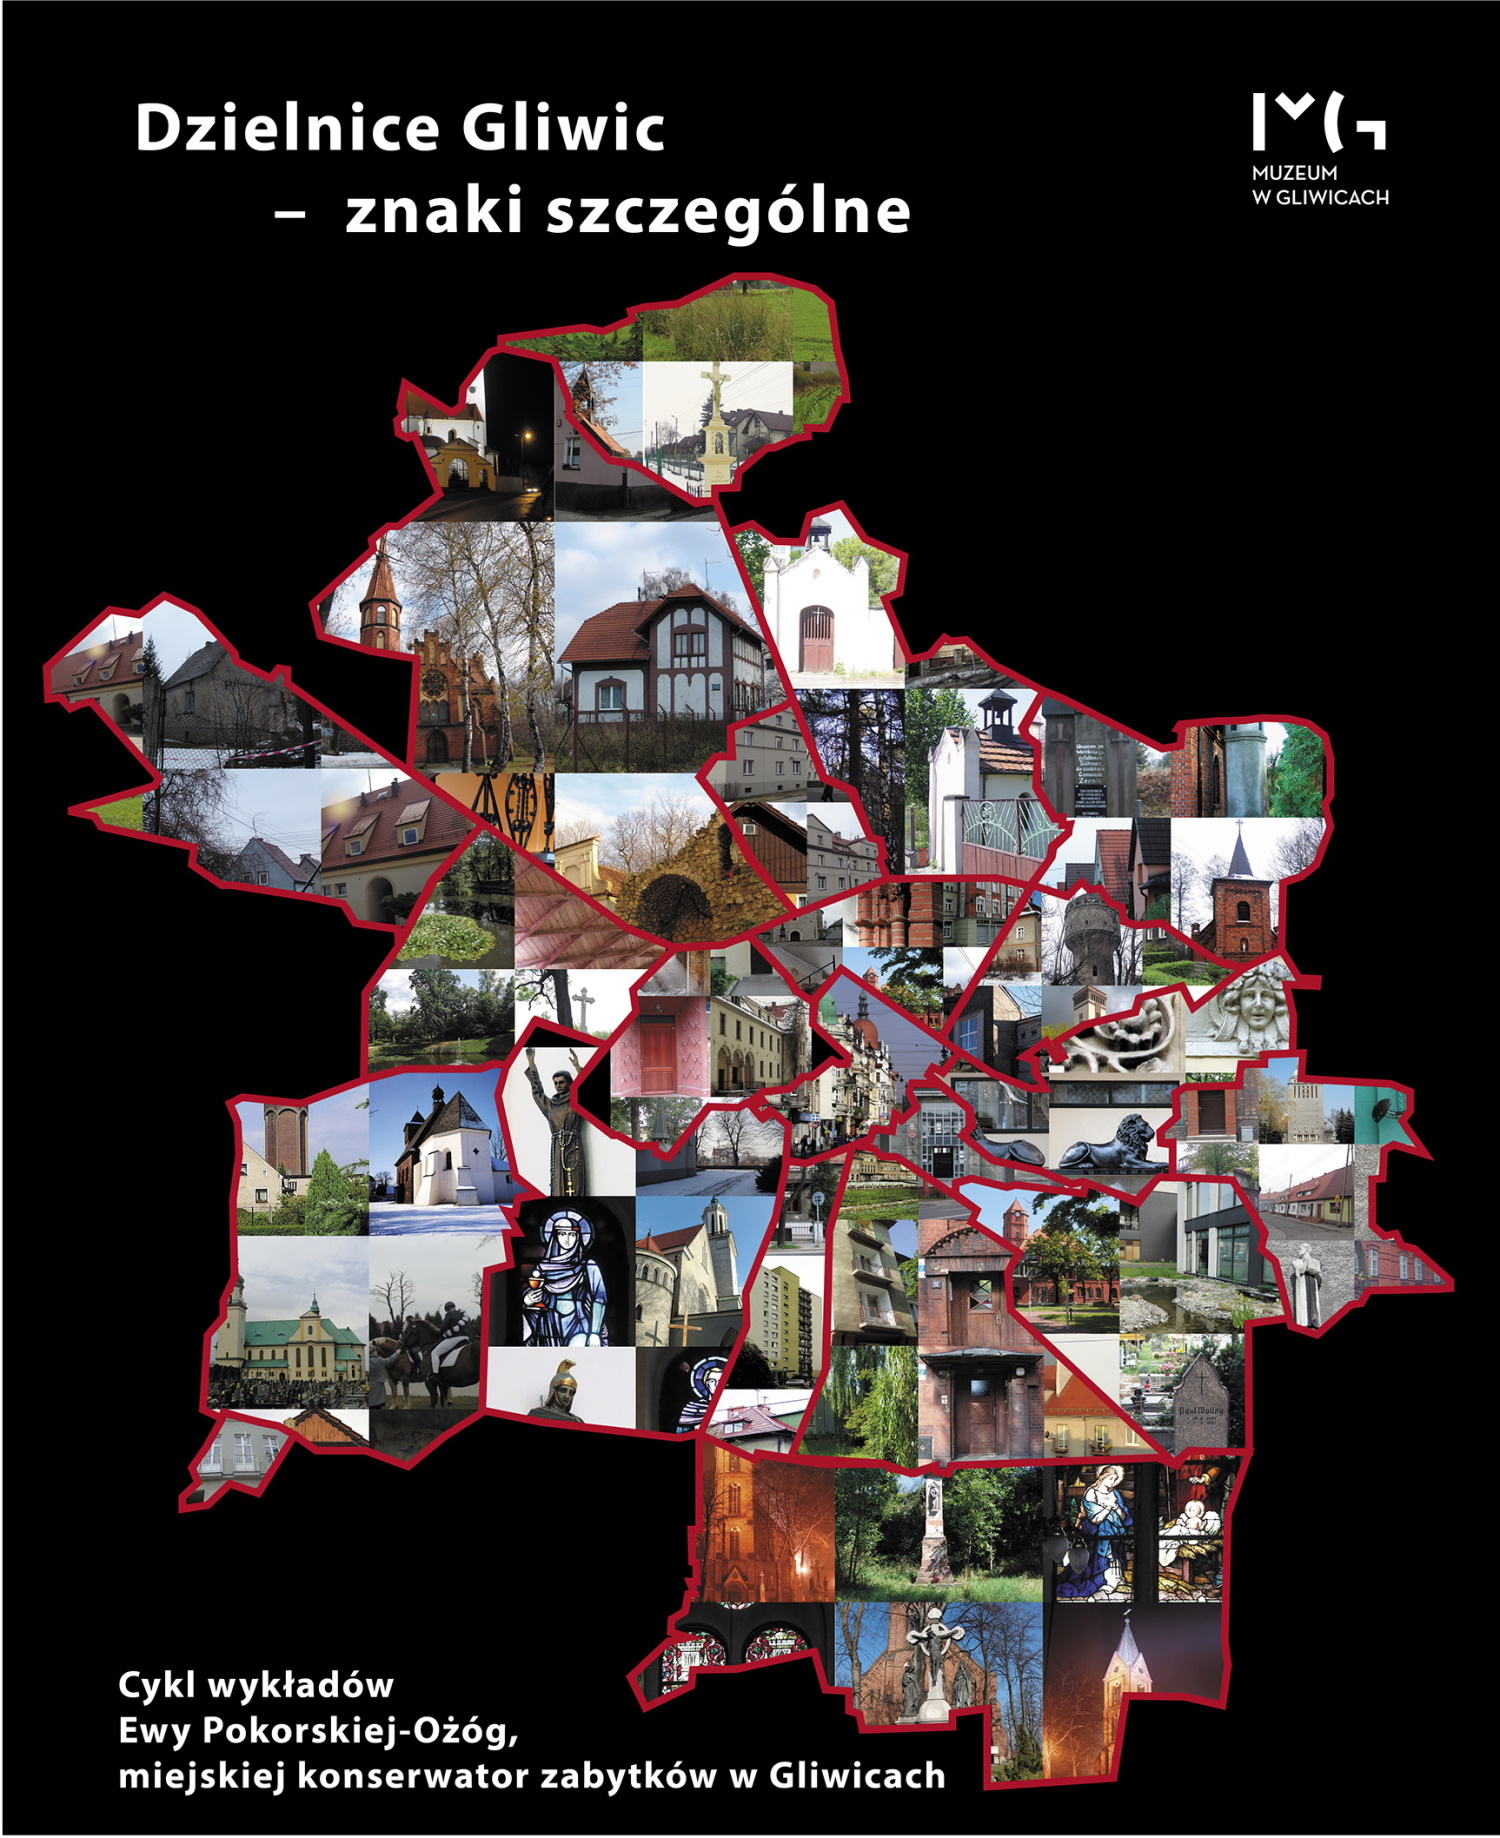 Dzielnice Gliwic - znaki szczególne. Wykład: „Archeologiczne Czechowice”